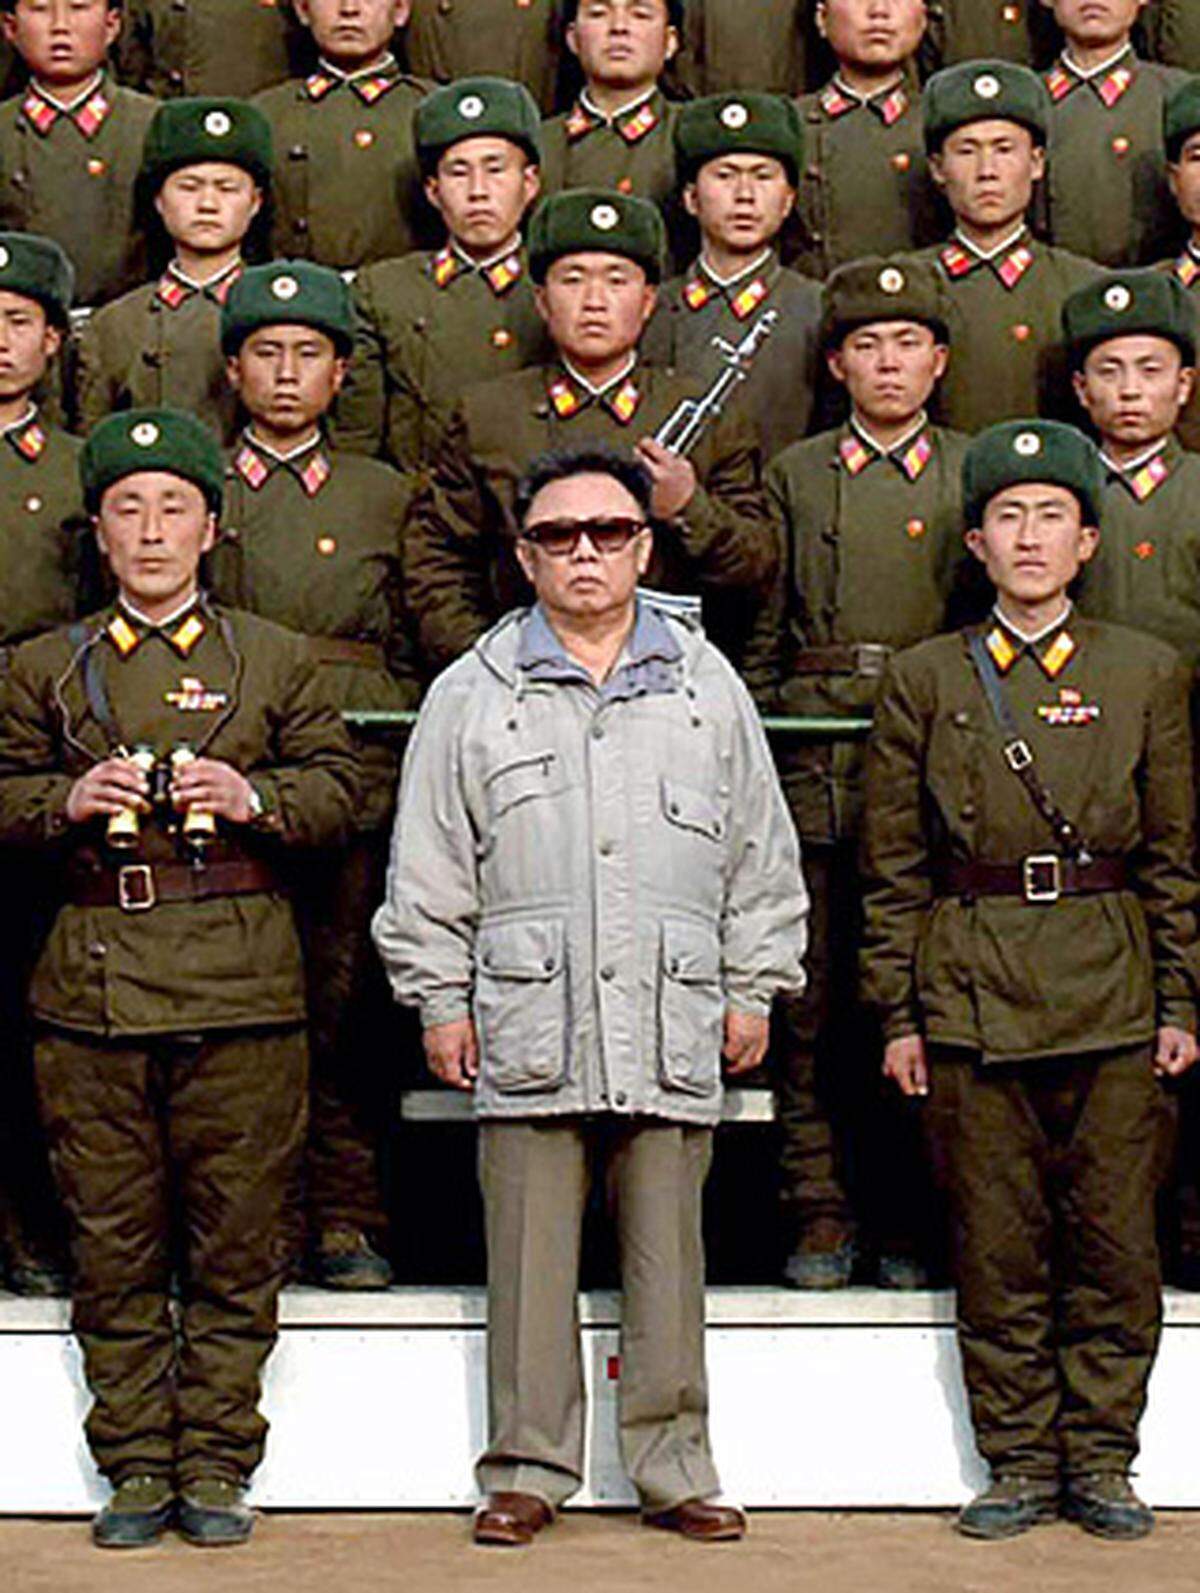 Um seine geringe Körpergröße (ca. 1,60 Meter) zu verschleiern, trägt Kim Jong-il Schuhe mitz Plateausohlen, mit geringem Erfolg. Ex-US-Präsident George W. Bush bezeichnete ihn nach einem Treffen öffentlich als "Pygmäen".